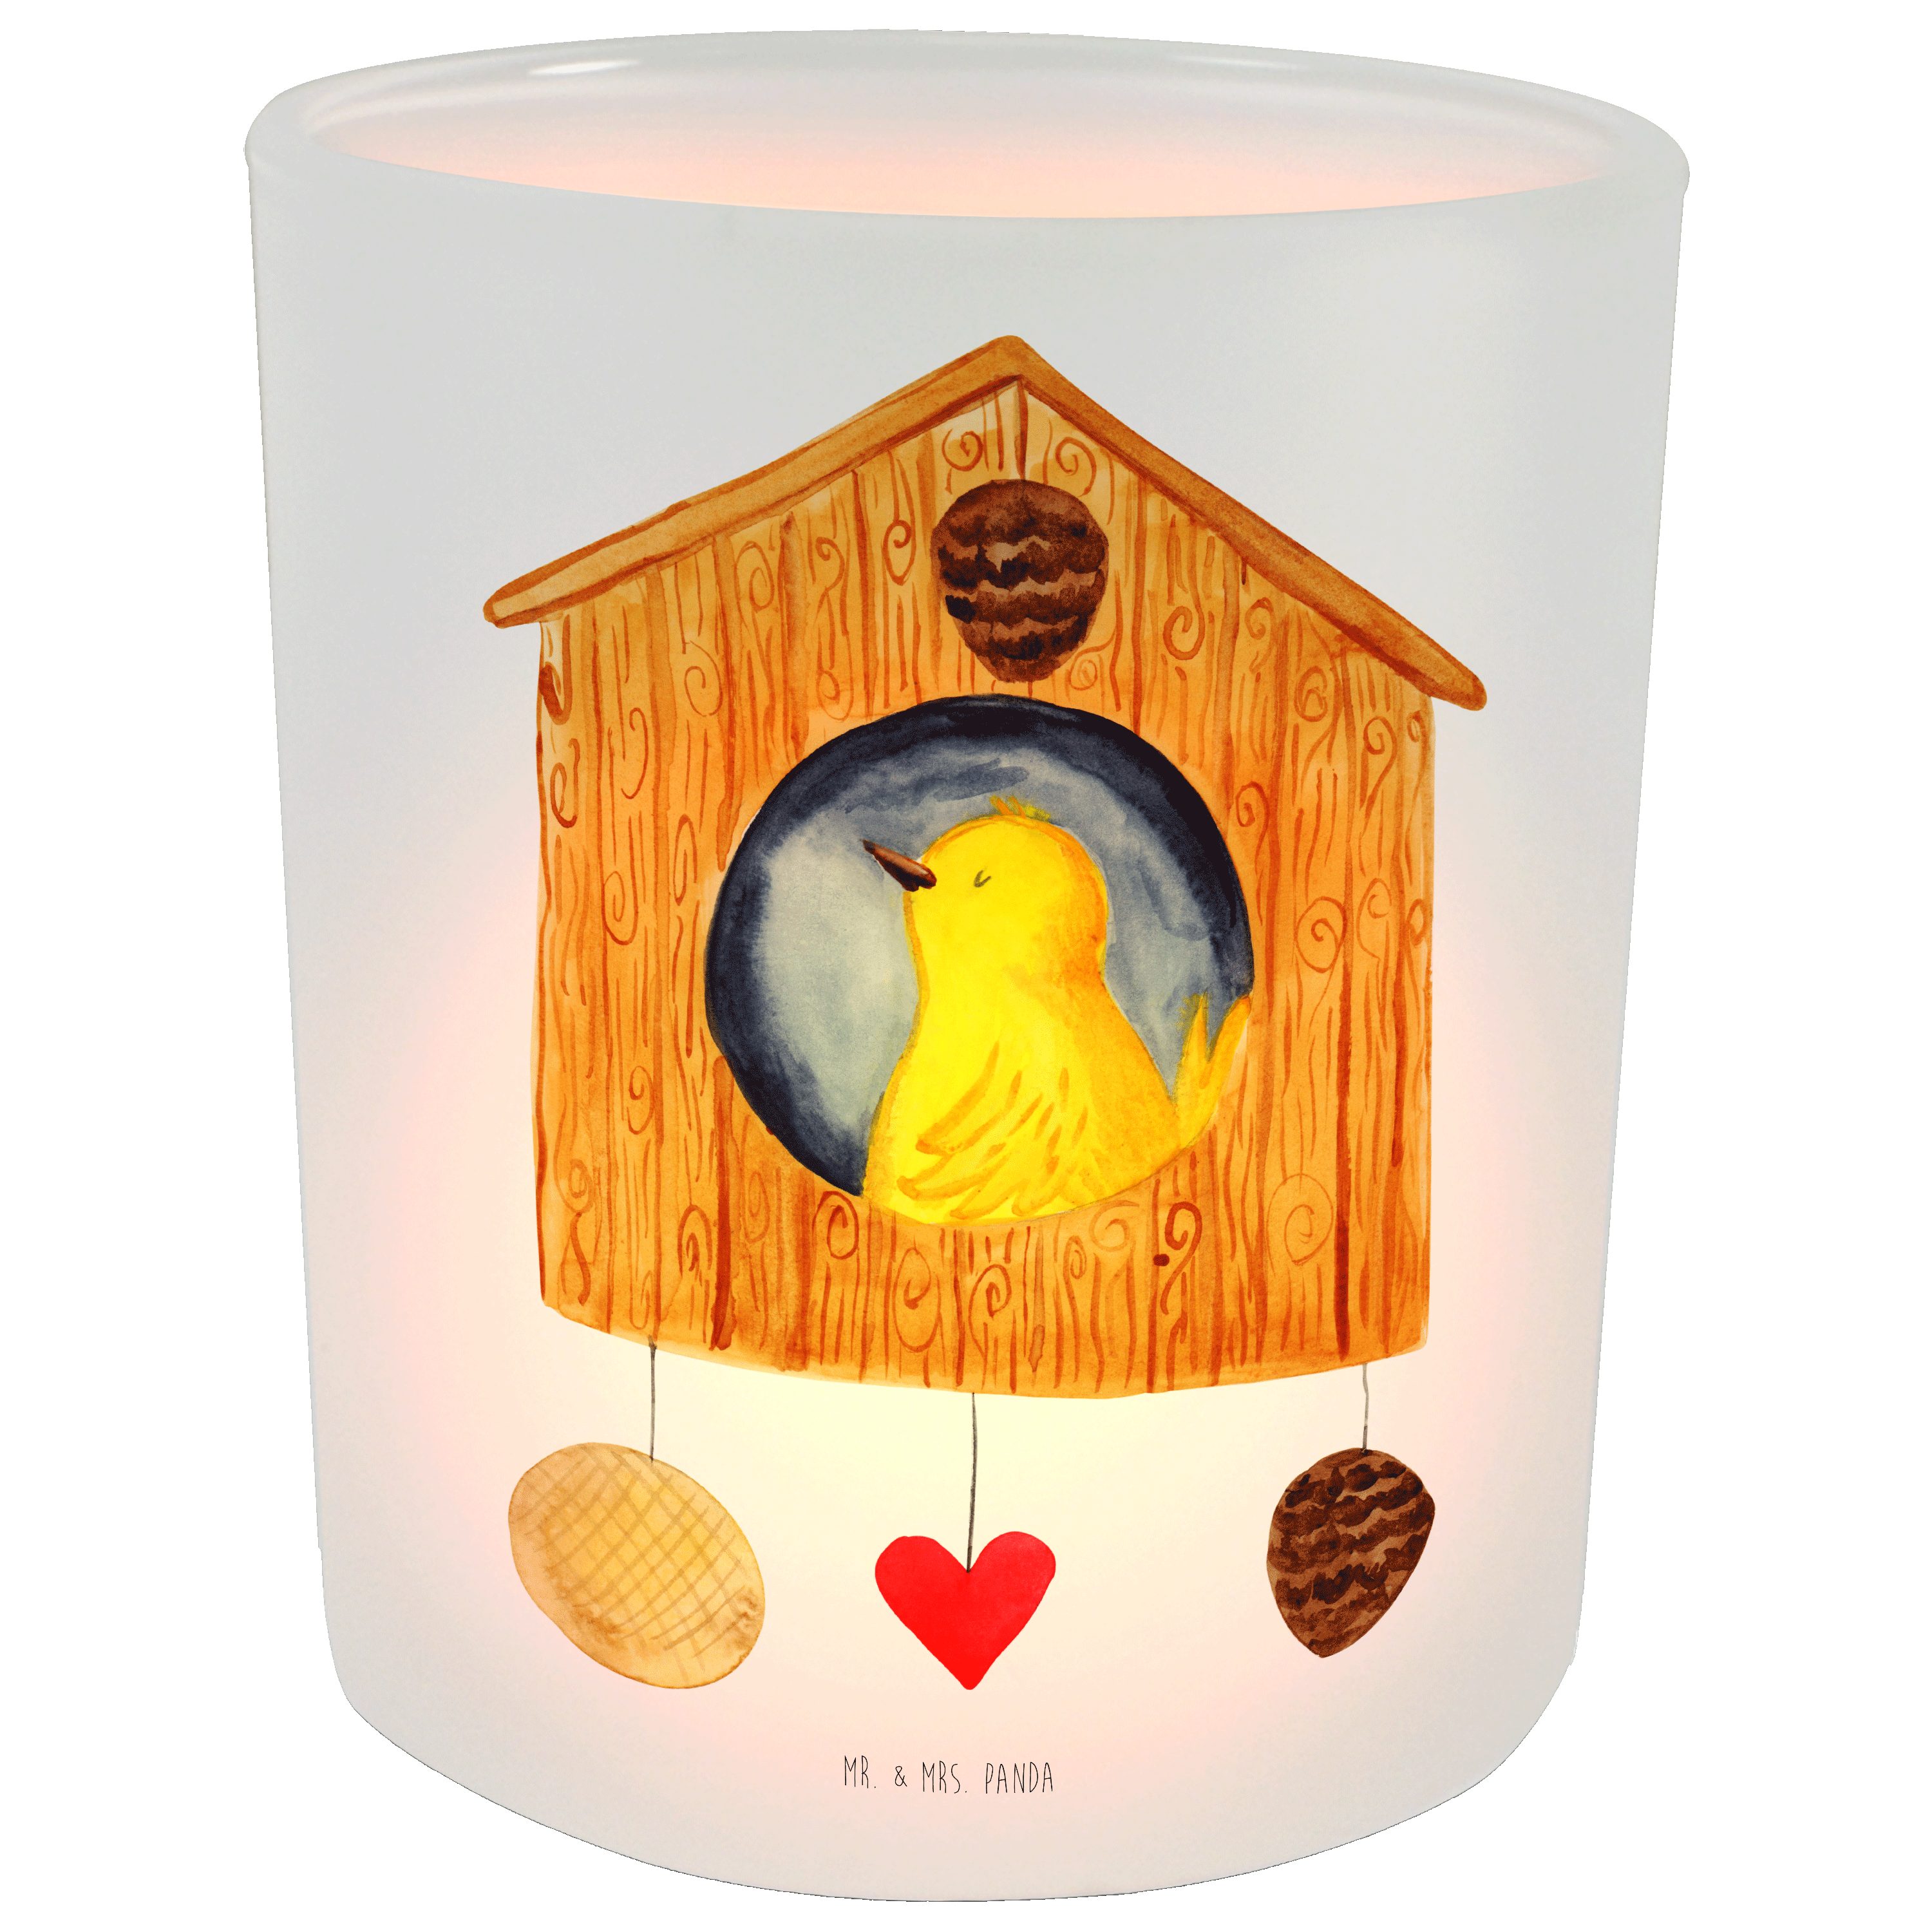 Mr. & Mrs. Panda Windlicht Vogelhaus - Transparent - Geschenk, Lieblingsort, Kerzenglas, Teelich (1 St)